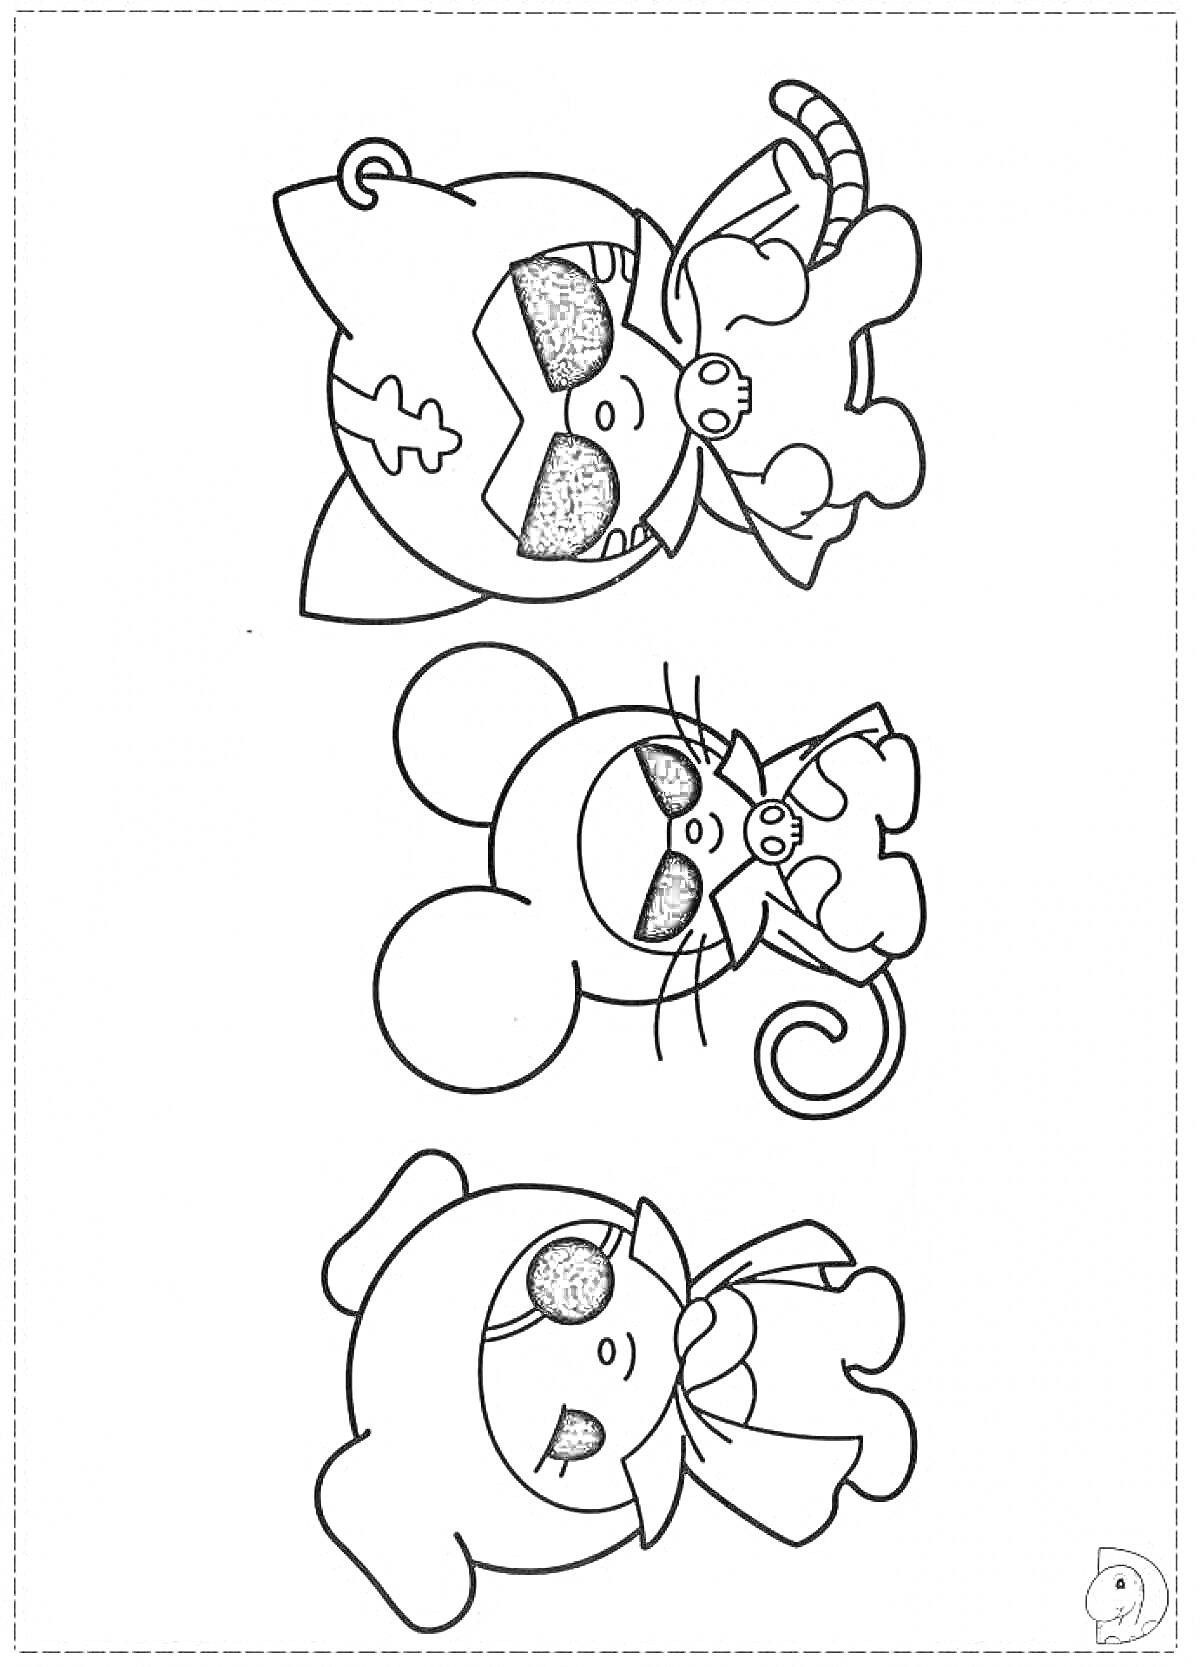 Раскраска Картинка с Курамой, Мелоди и мышонком